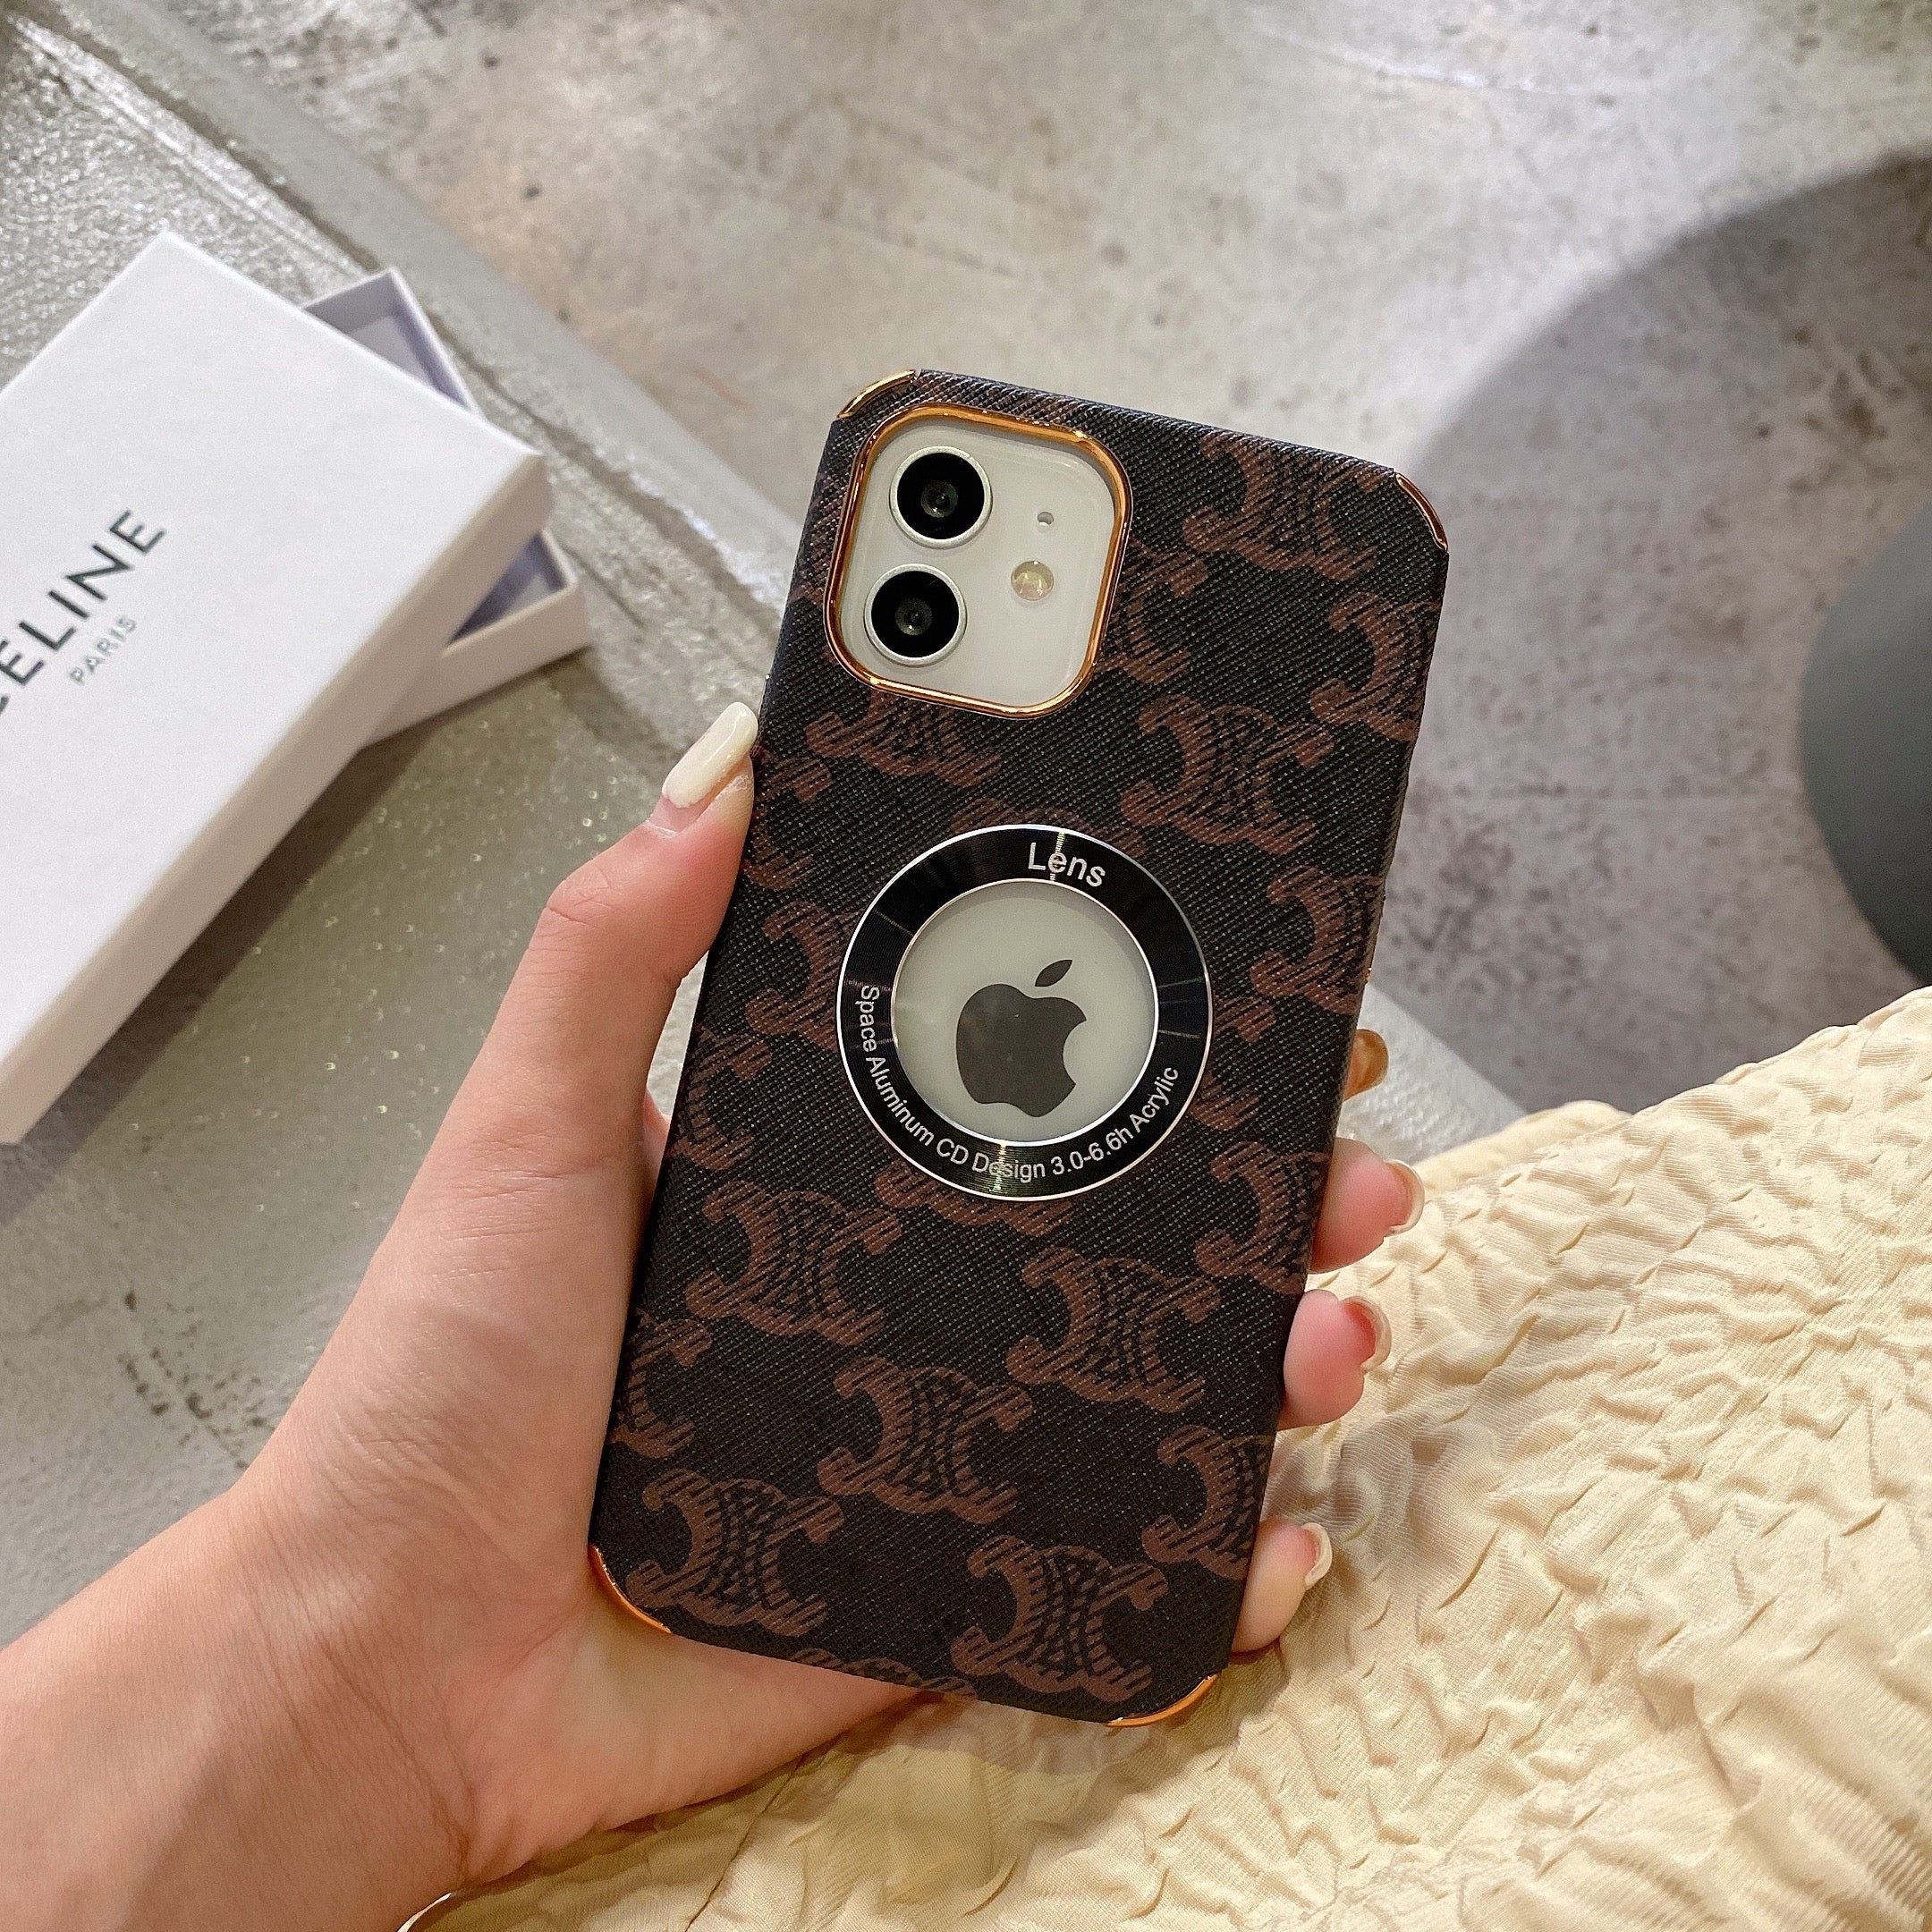 iPhone case - Versace